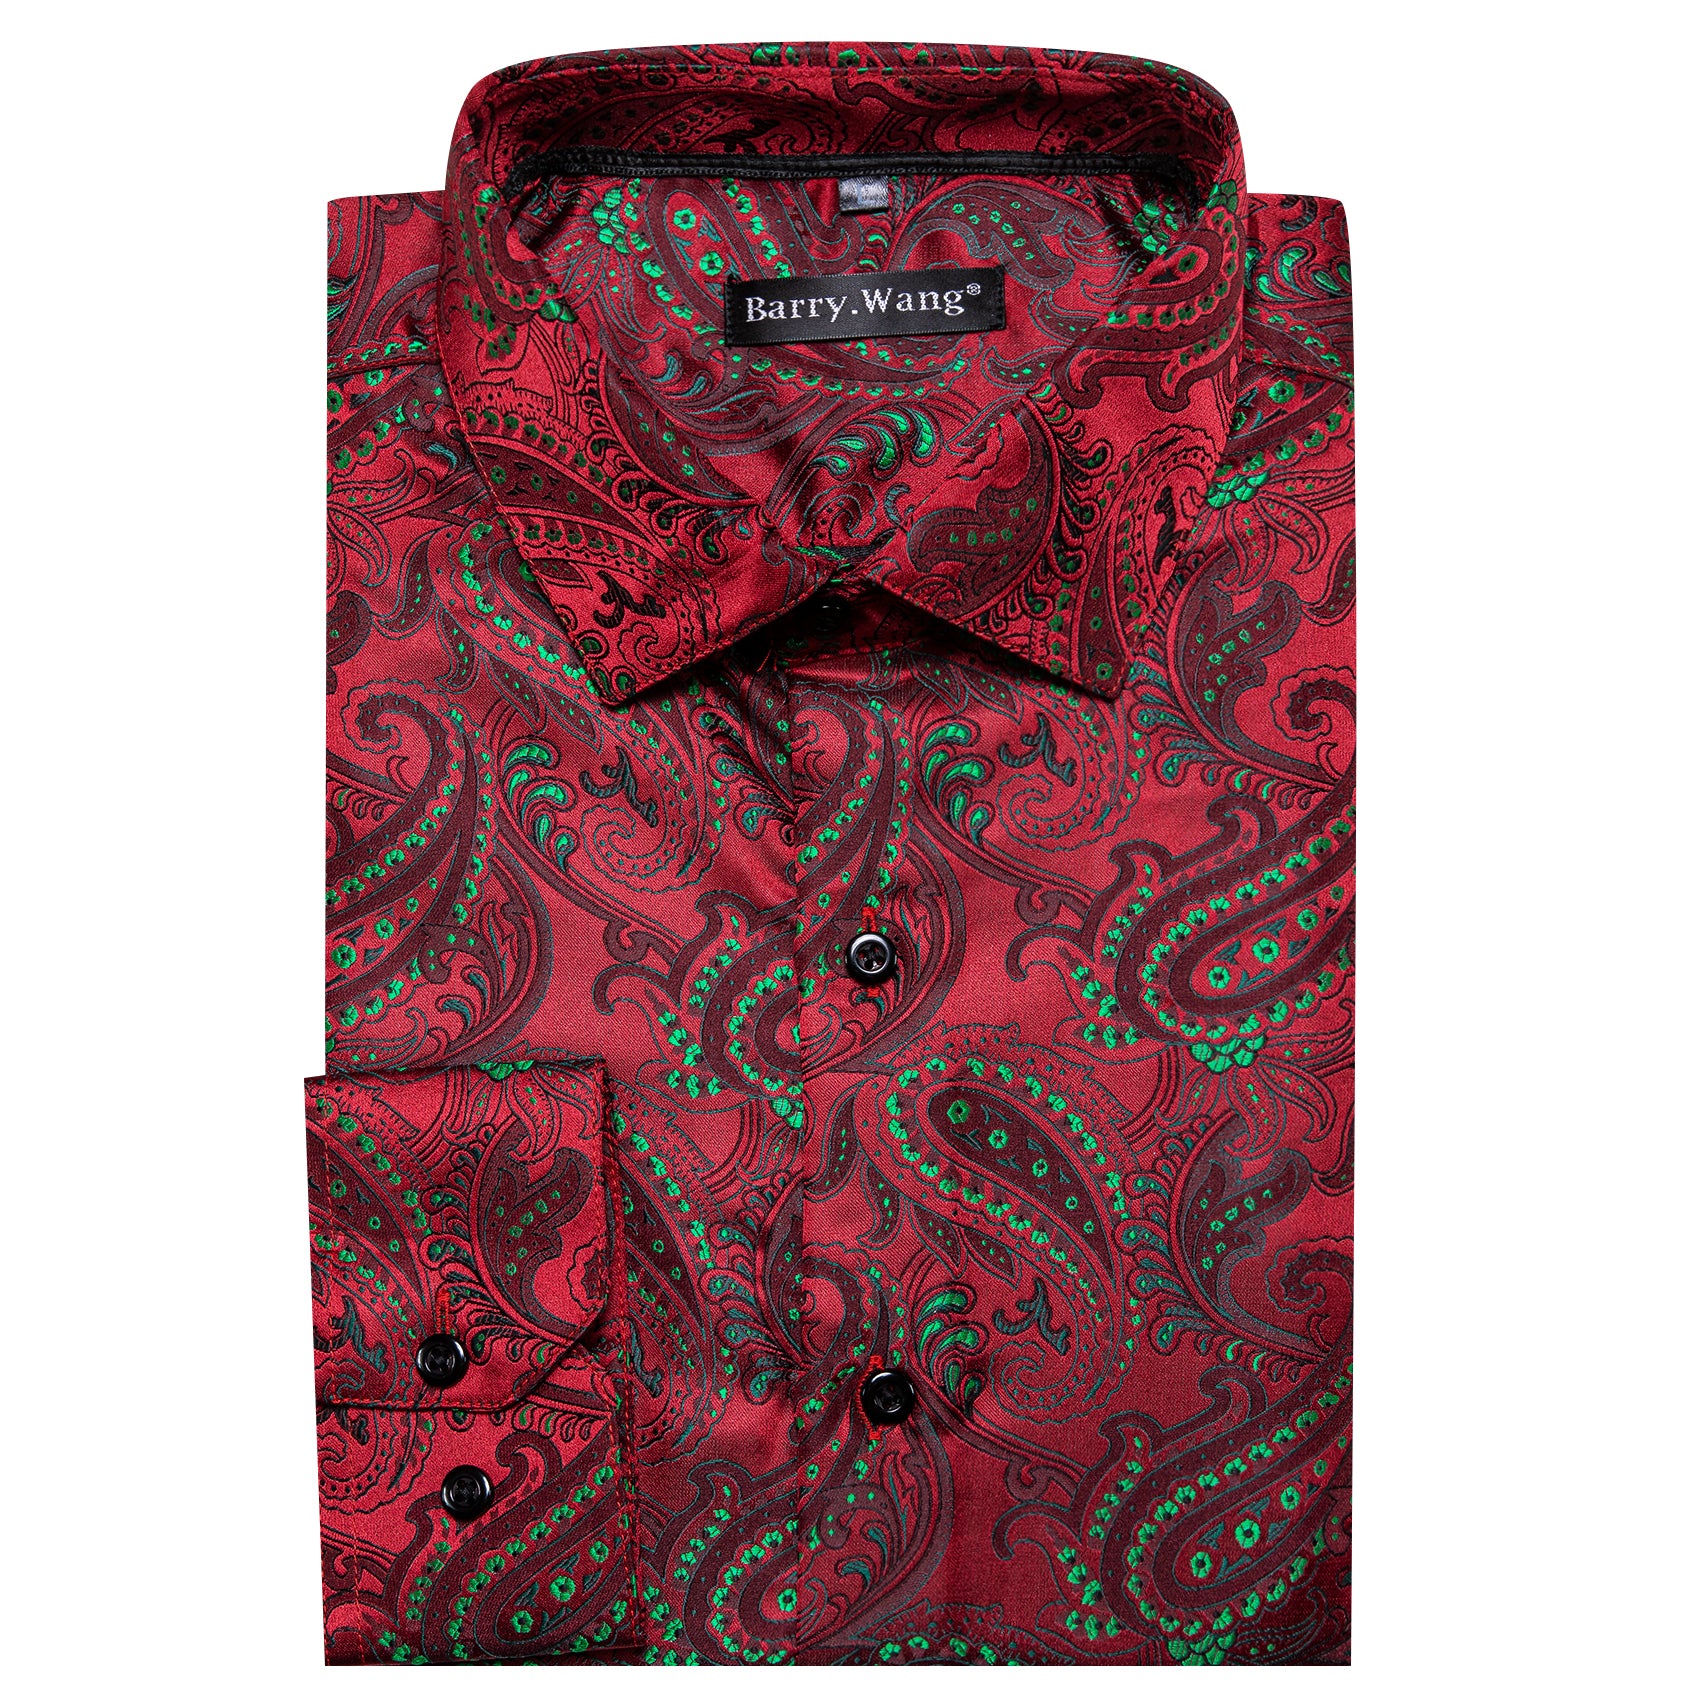 Barry.wang Red Green Floral Silk Men's Shirt